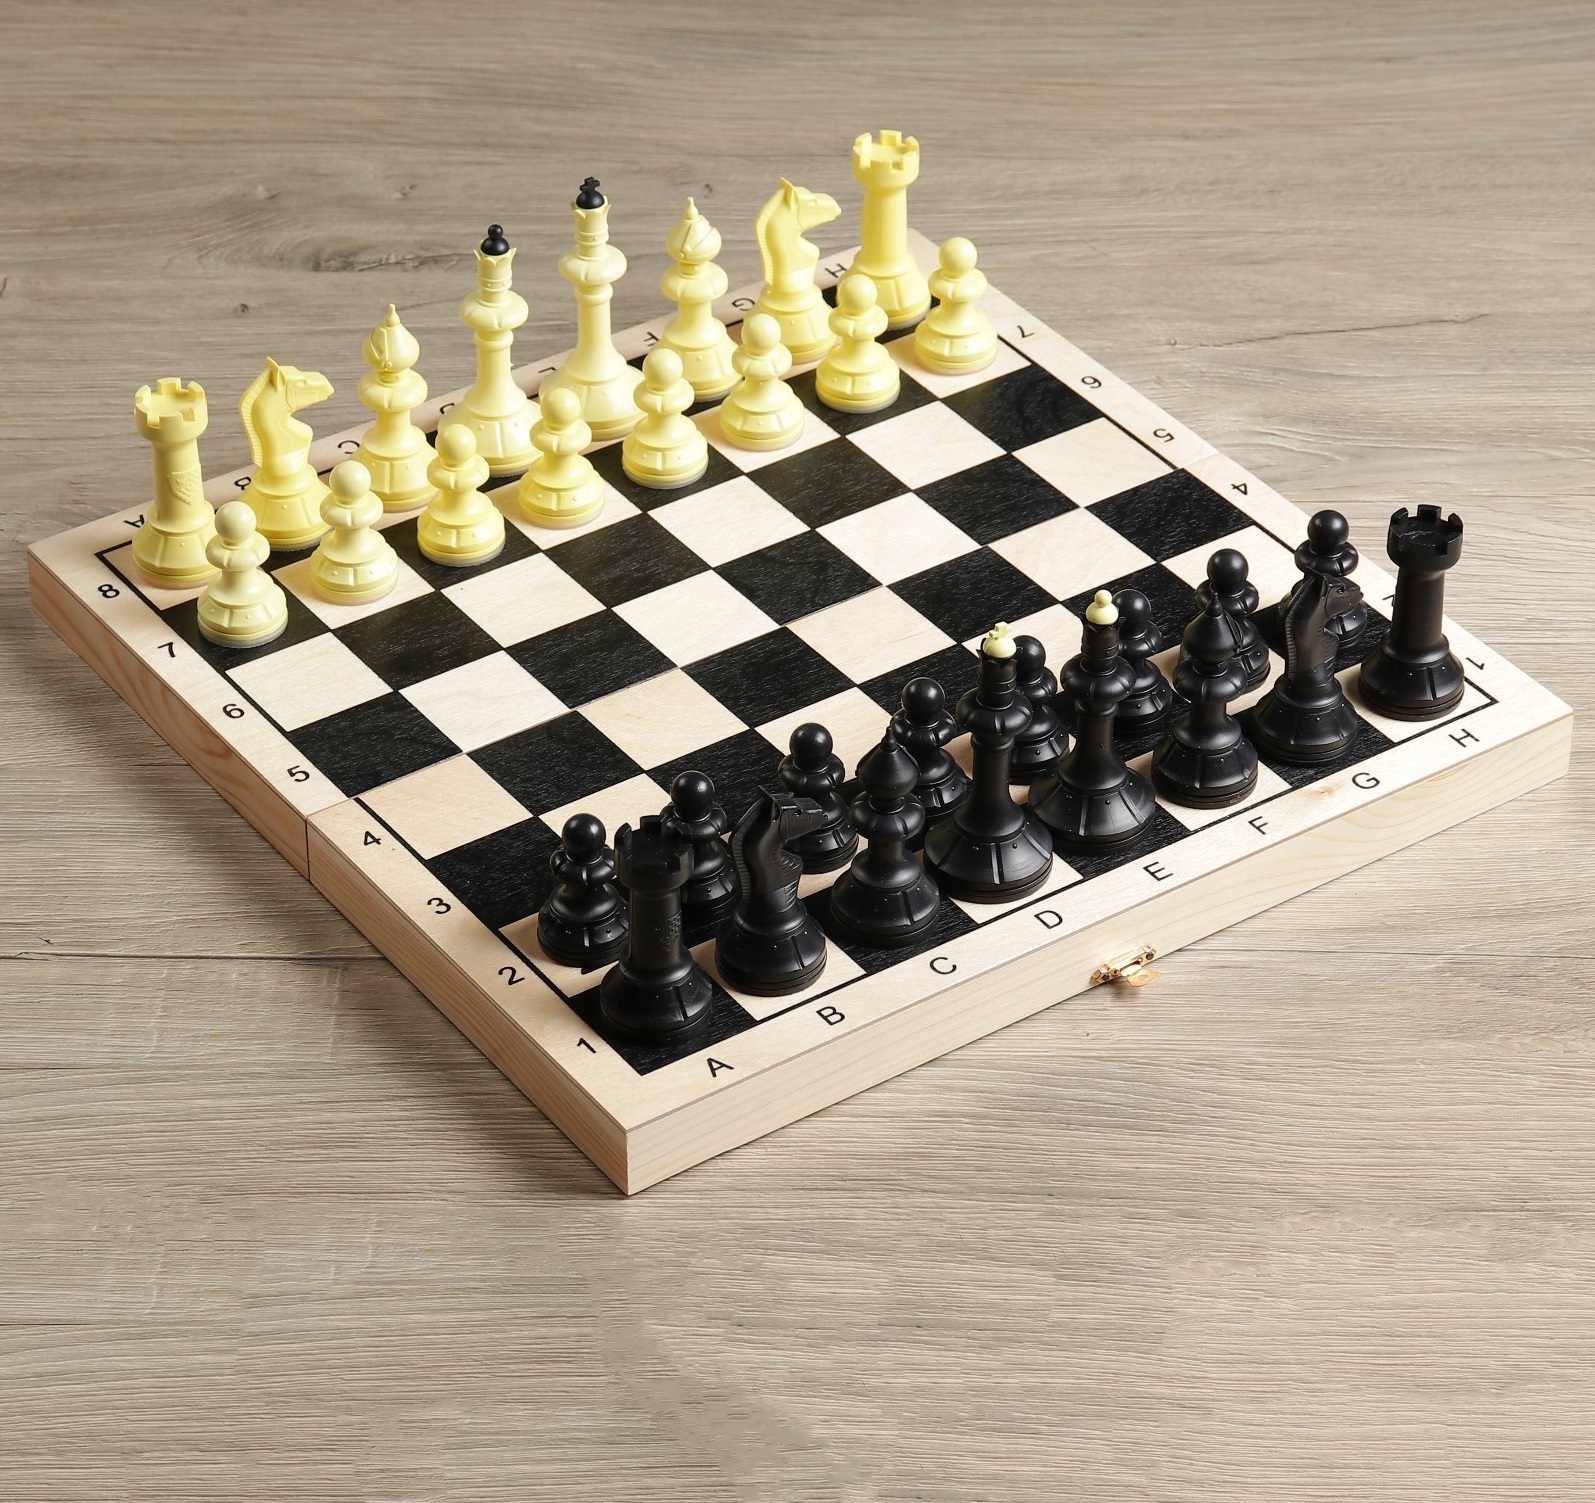 Купить шахматы рф. Шахматы гроссмейстерские 40х40 см. Lebaijia шахматы c08. Игра 3 в 1 (нарды, шахматы (пластик), шашки) малая классика (086-12). Игра 3в1 (шахматы, шашки, нарды), доска дерево+пластик (40/40 см).